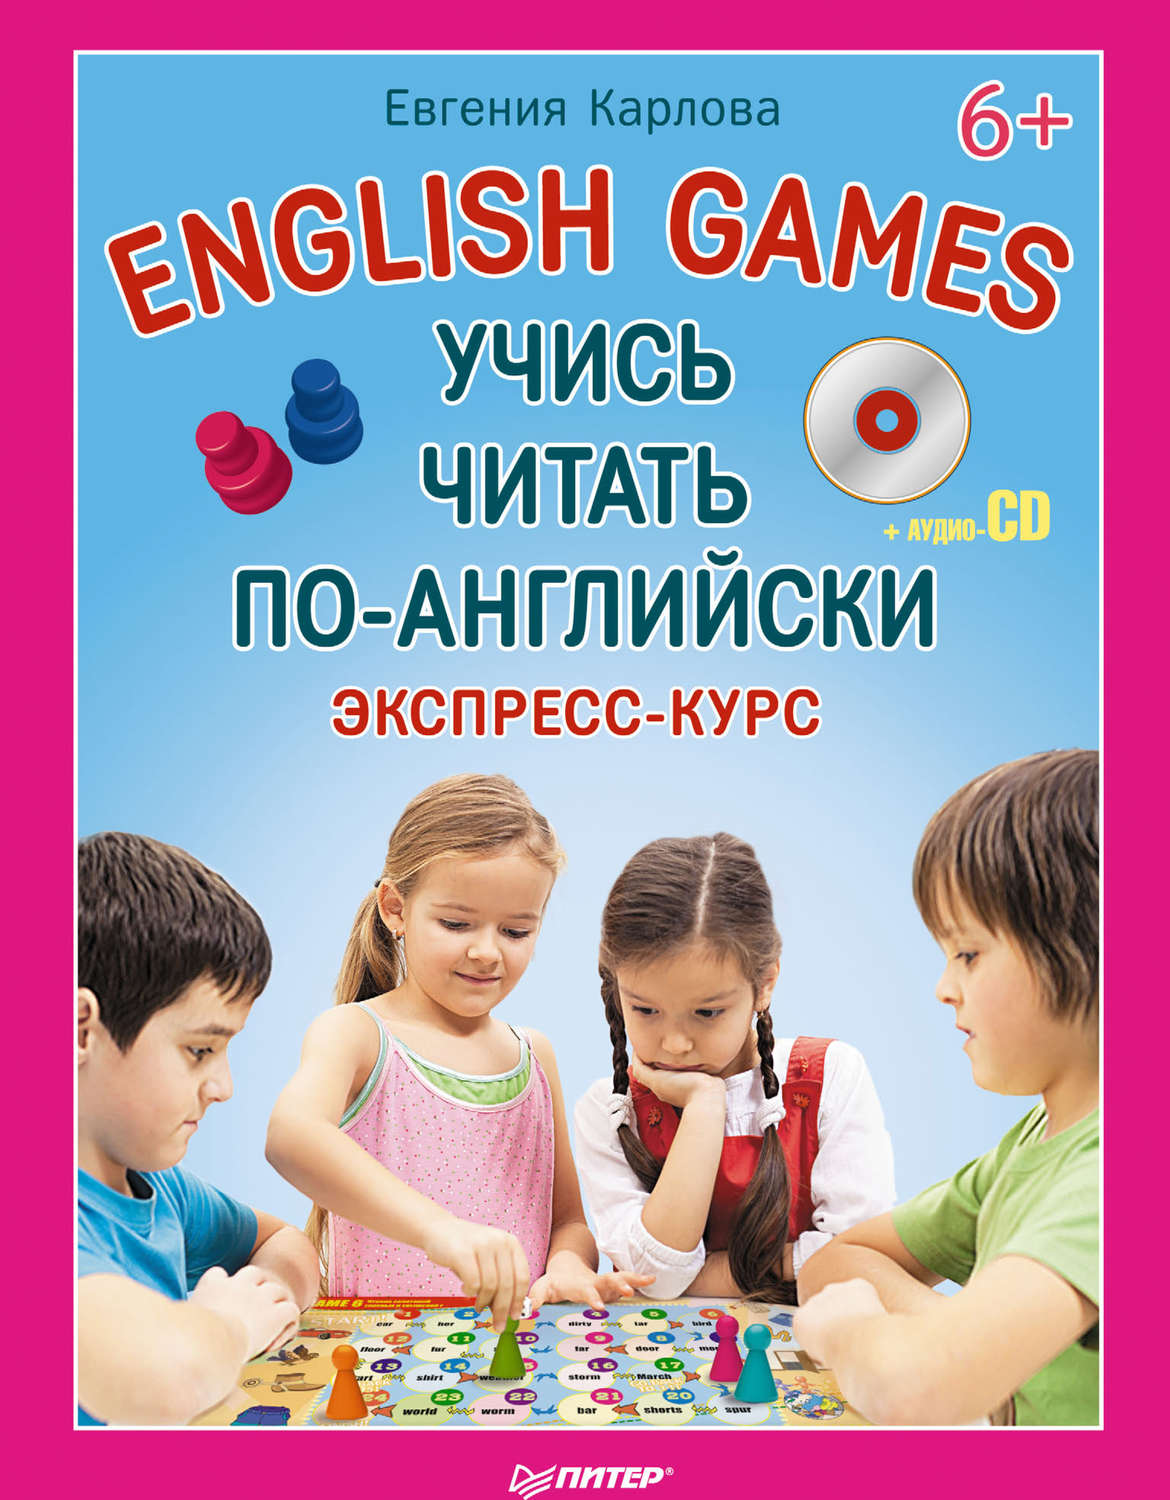 Детские игры читать. Читаем по английски. Обучение чтению на английском. Учись читать.